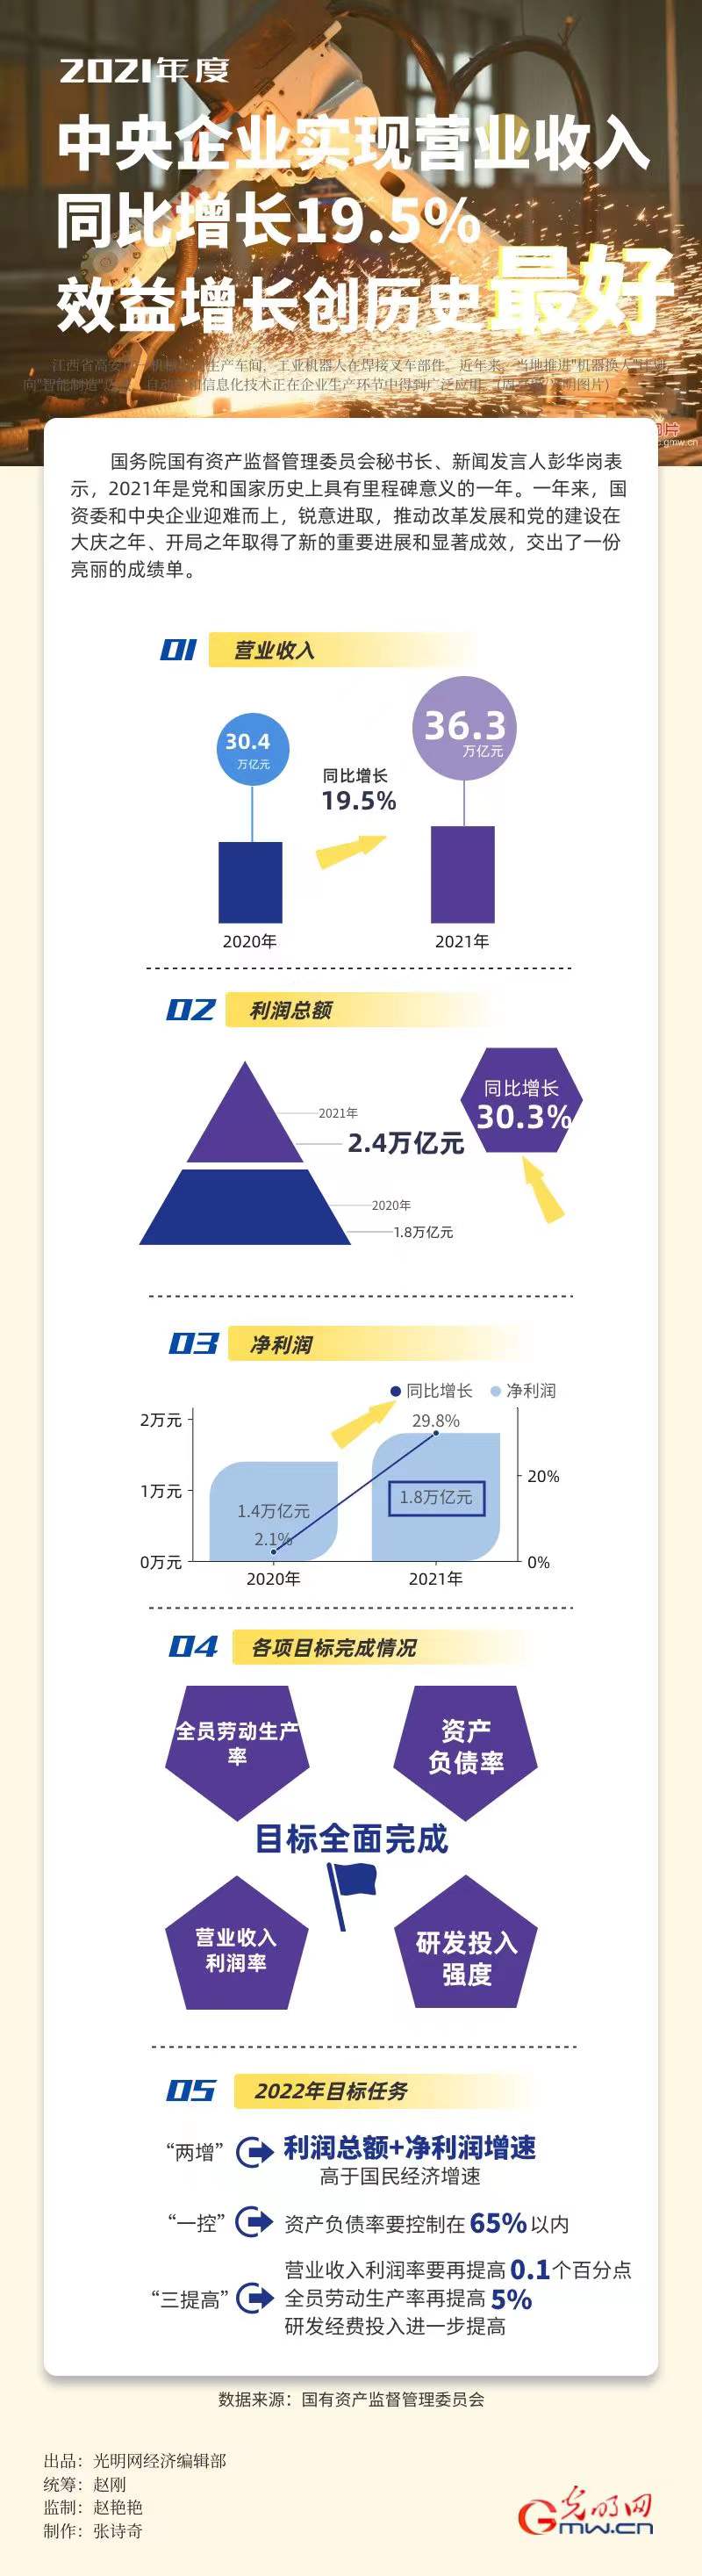 【2021中国经济年报】2021年中央企业营业收入增长19.5% 效益增长创历史最好水平